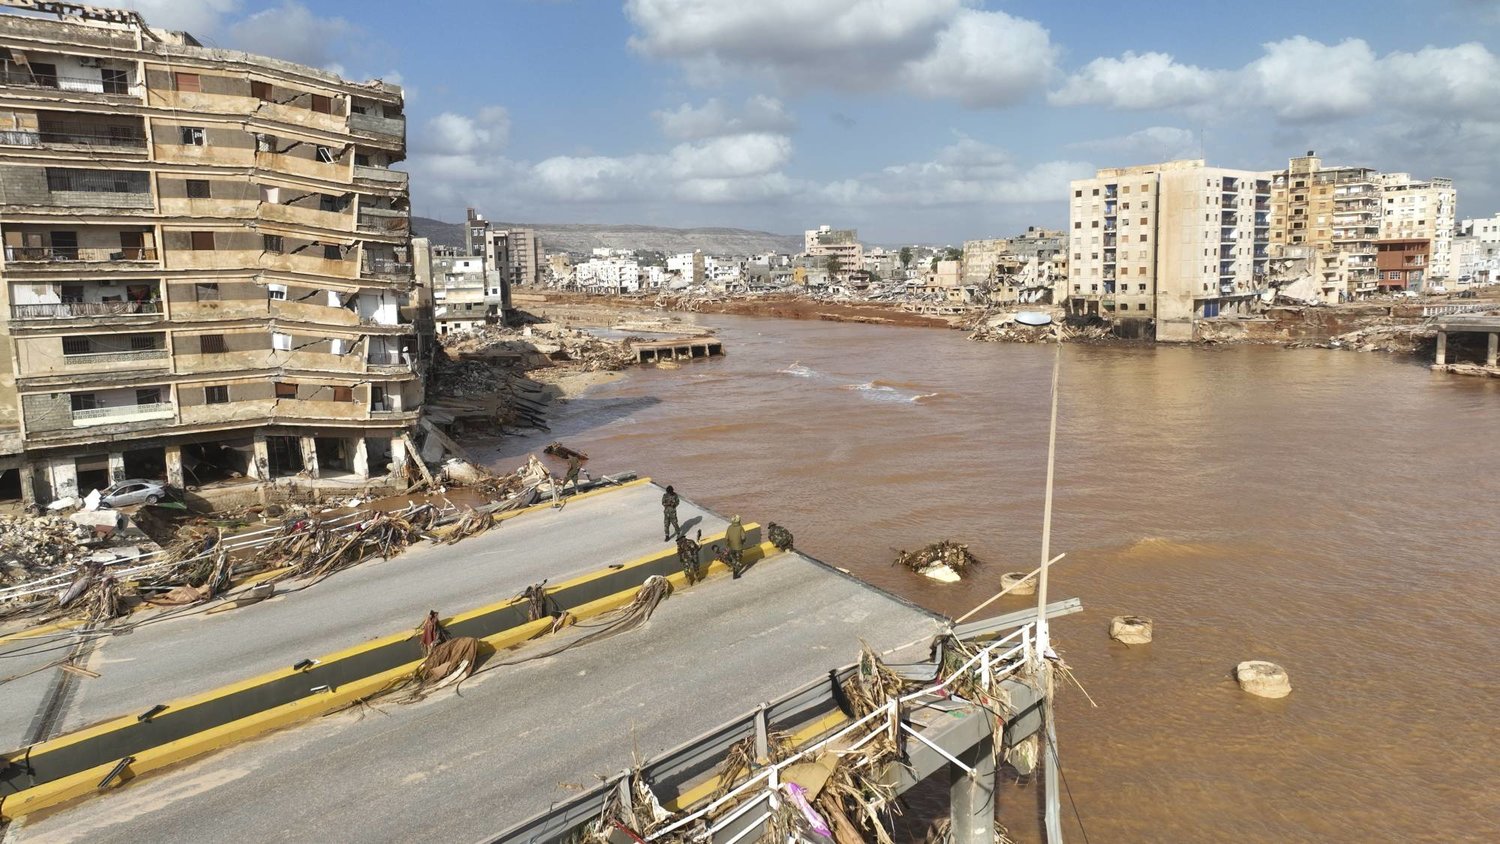 صحيفة واشنطن بوست .. الكارثة التي حلت بشرق ليبيا يتحملها الجميع دون استثناء 